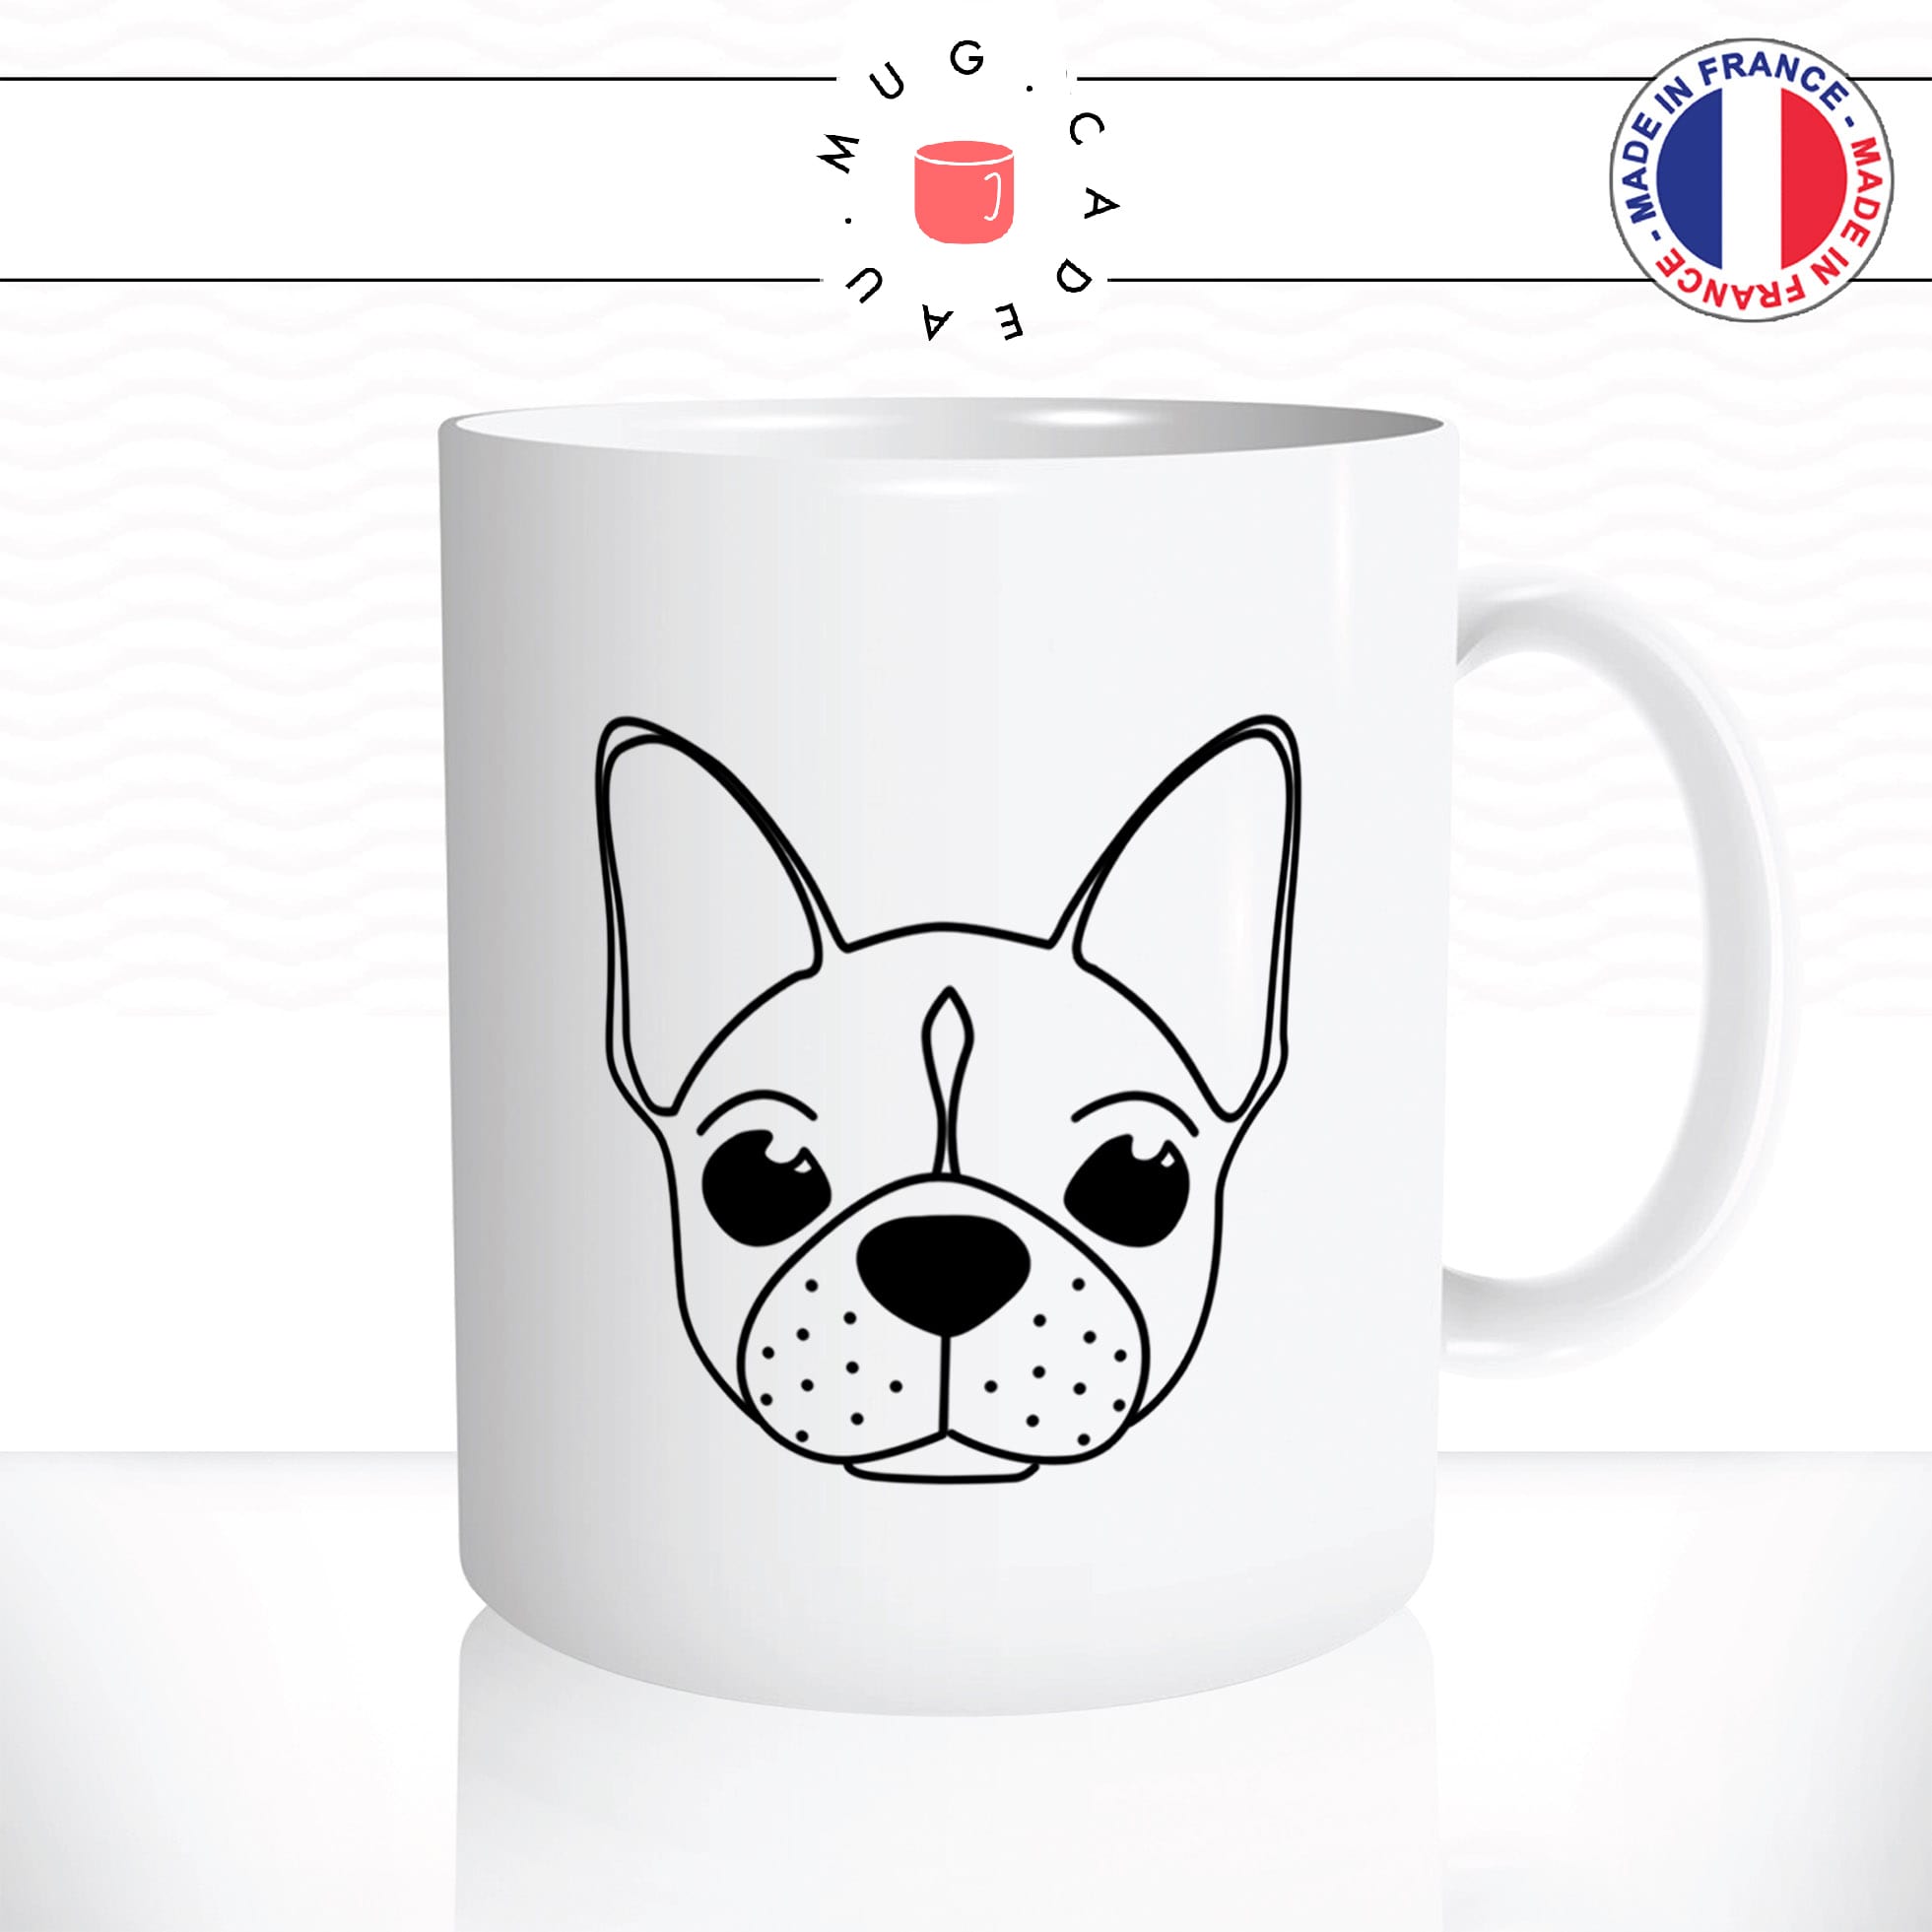 mug-tasse-chien-dog-compagnie-pug-french-buldog-francais-tete-dessin-animal-mignon-enfant-idée-cadeau-personnalisé-original-cafe-thé